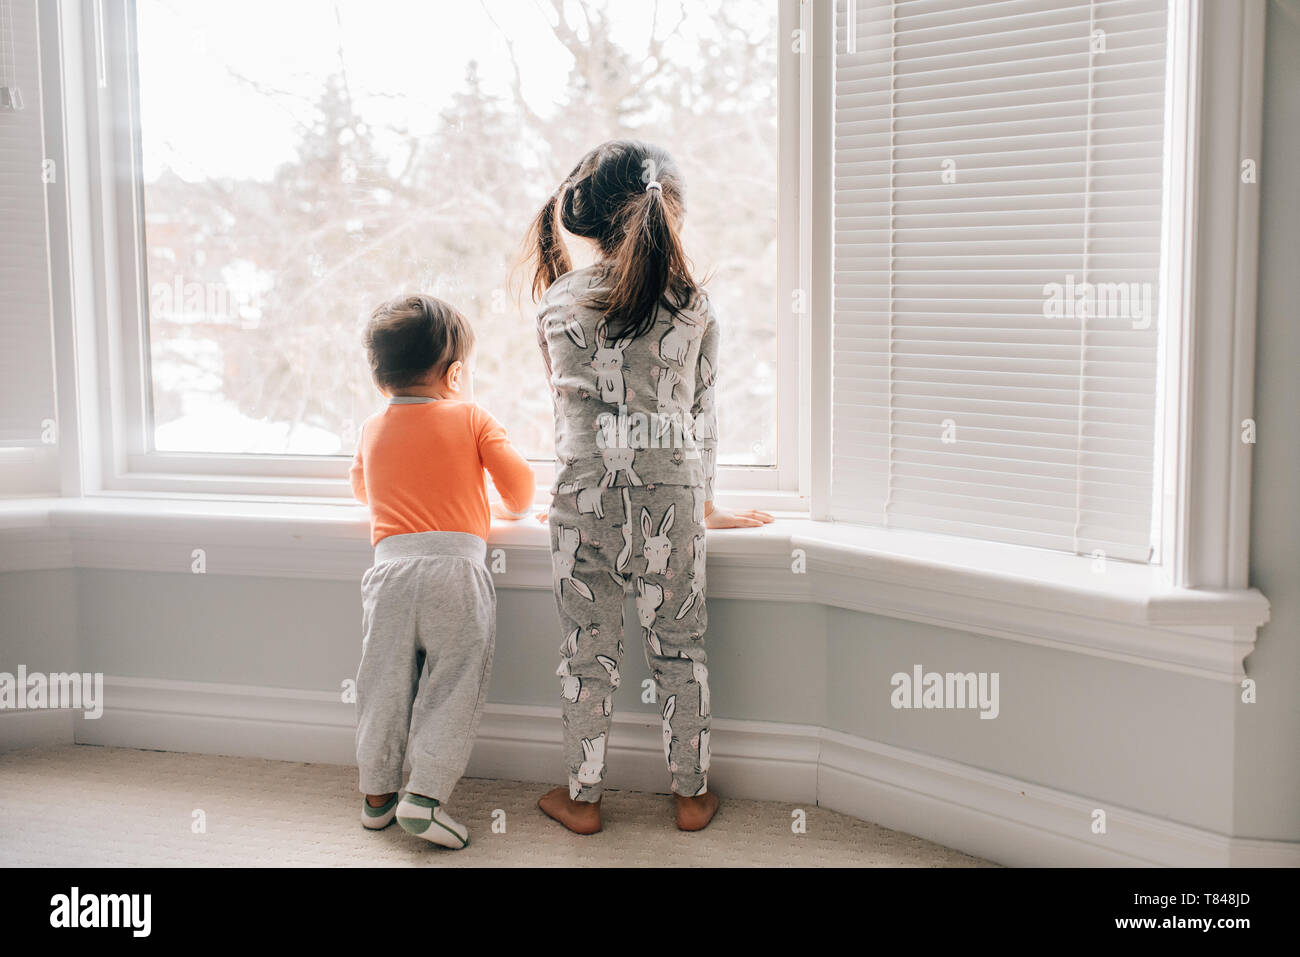 Chica y hermano bebé mirando a través salón ventana, vista trasera Foto de stock